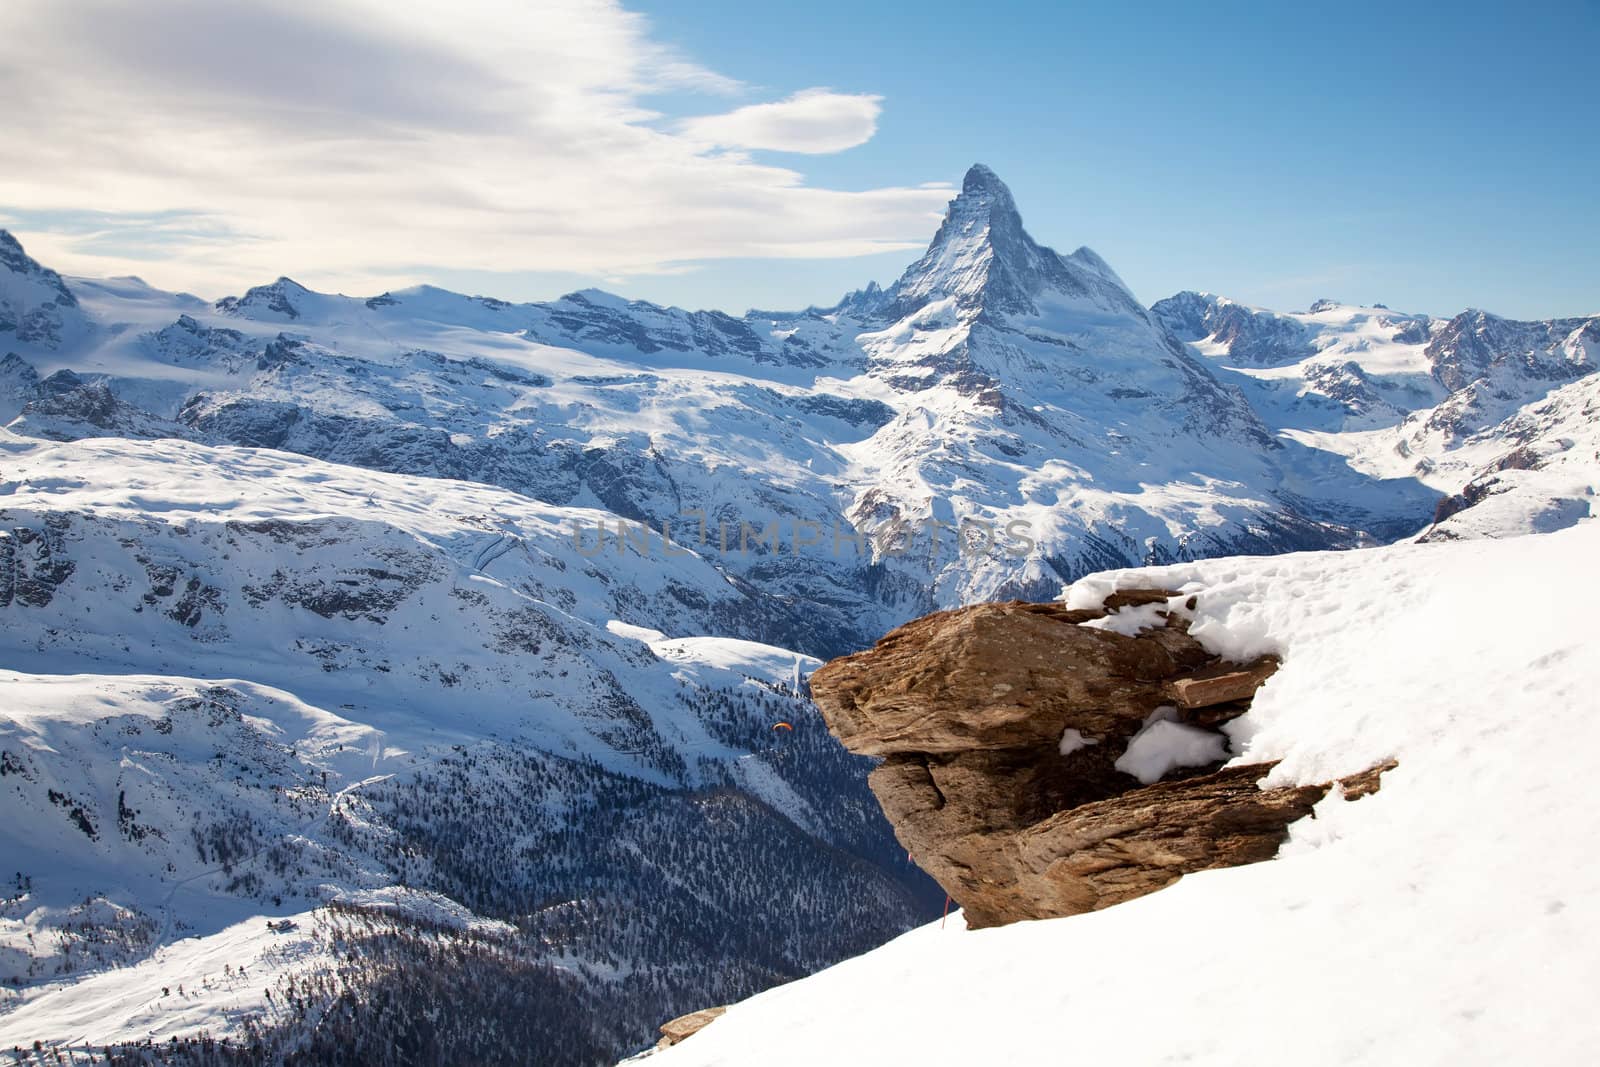 Matterhorn rock by RawGroup